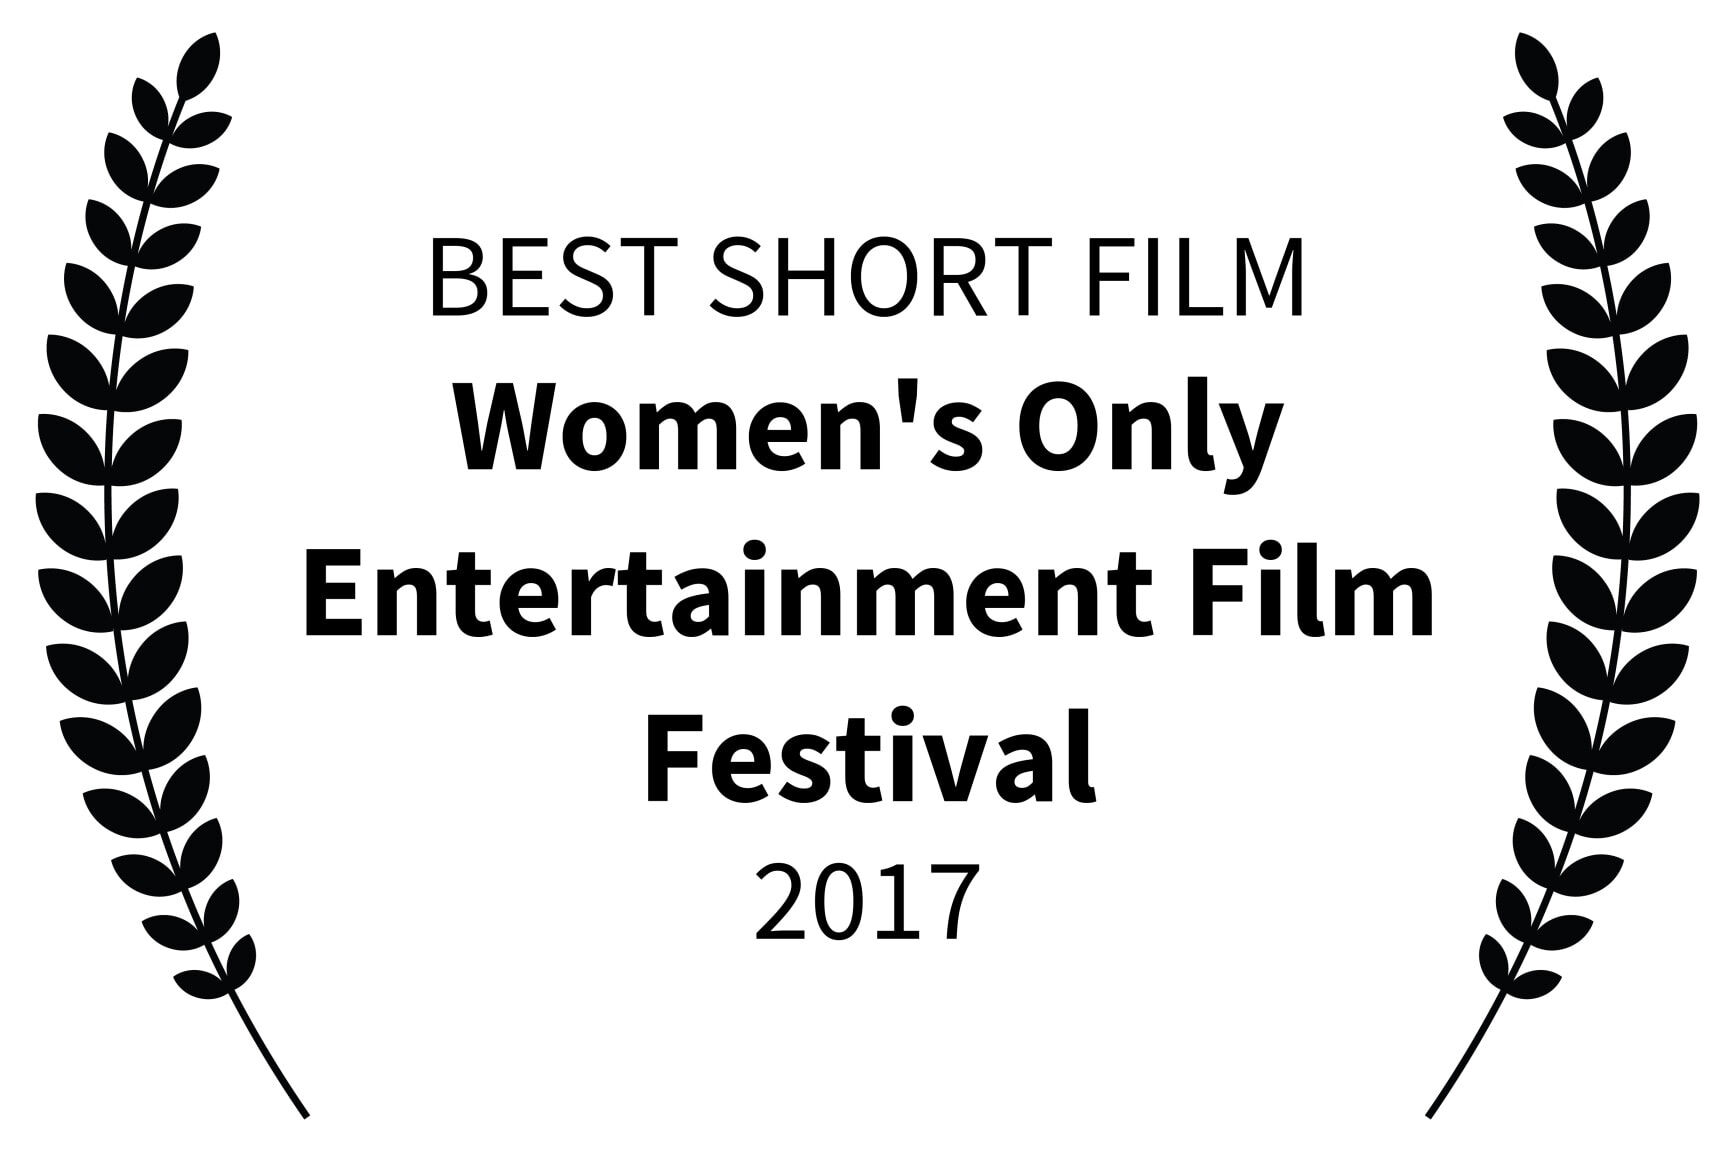 BEST SHORT FILM - Womens Only Entertainment Film Festival - 2017